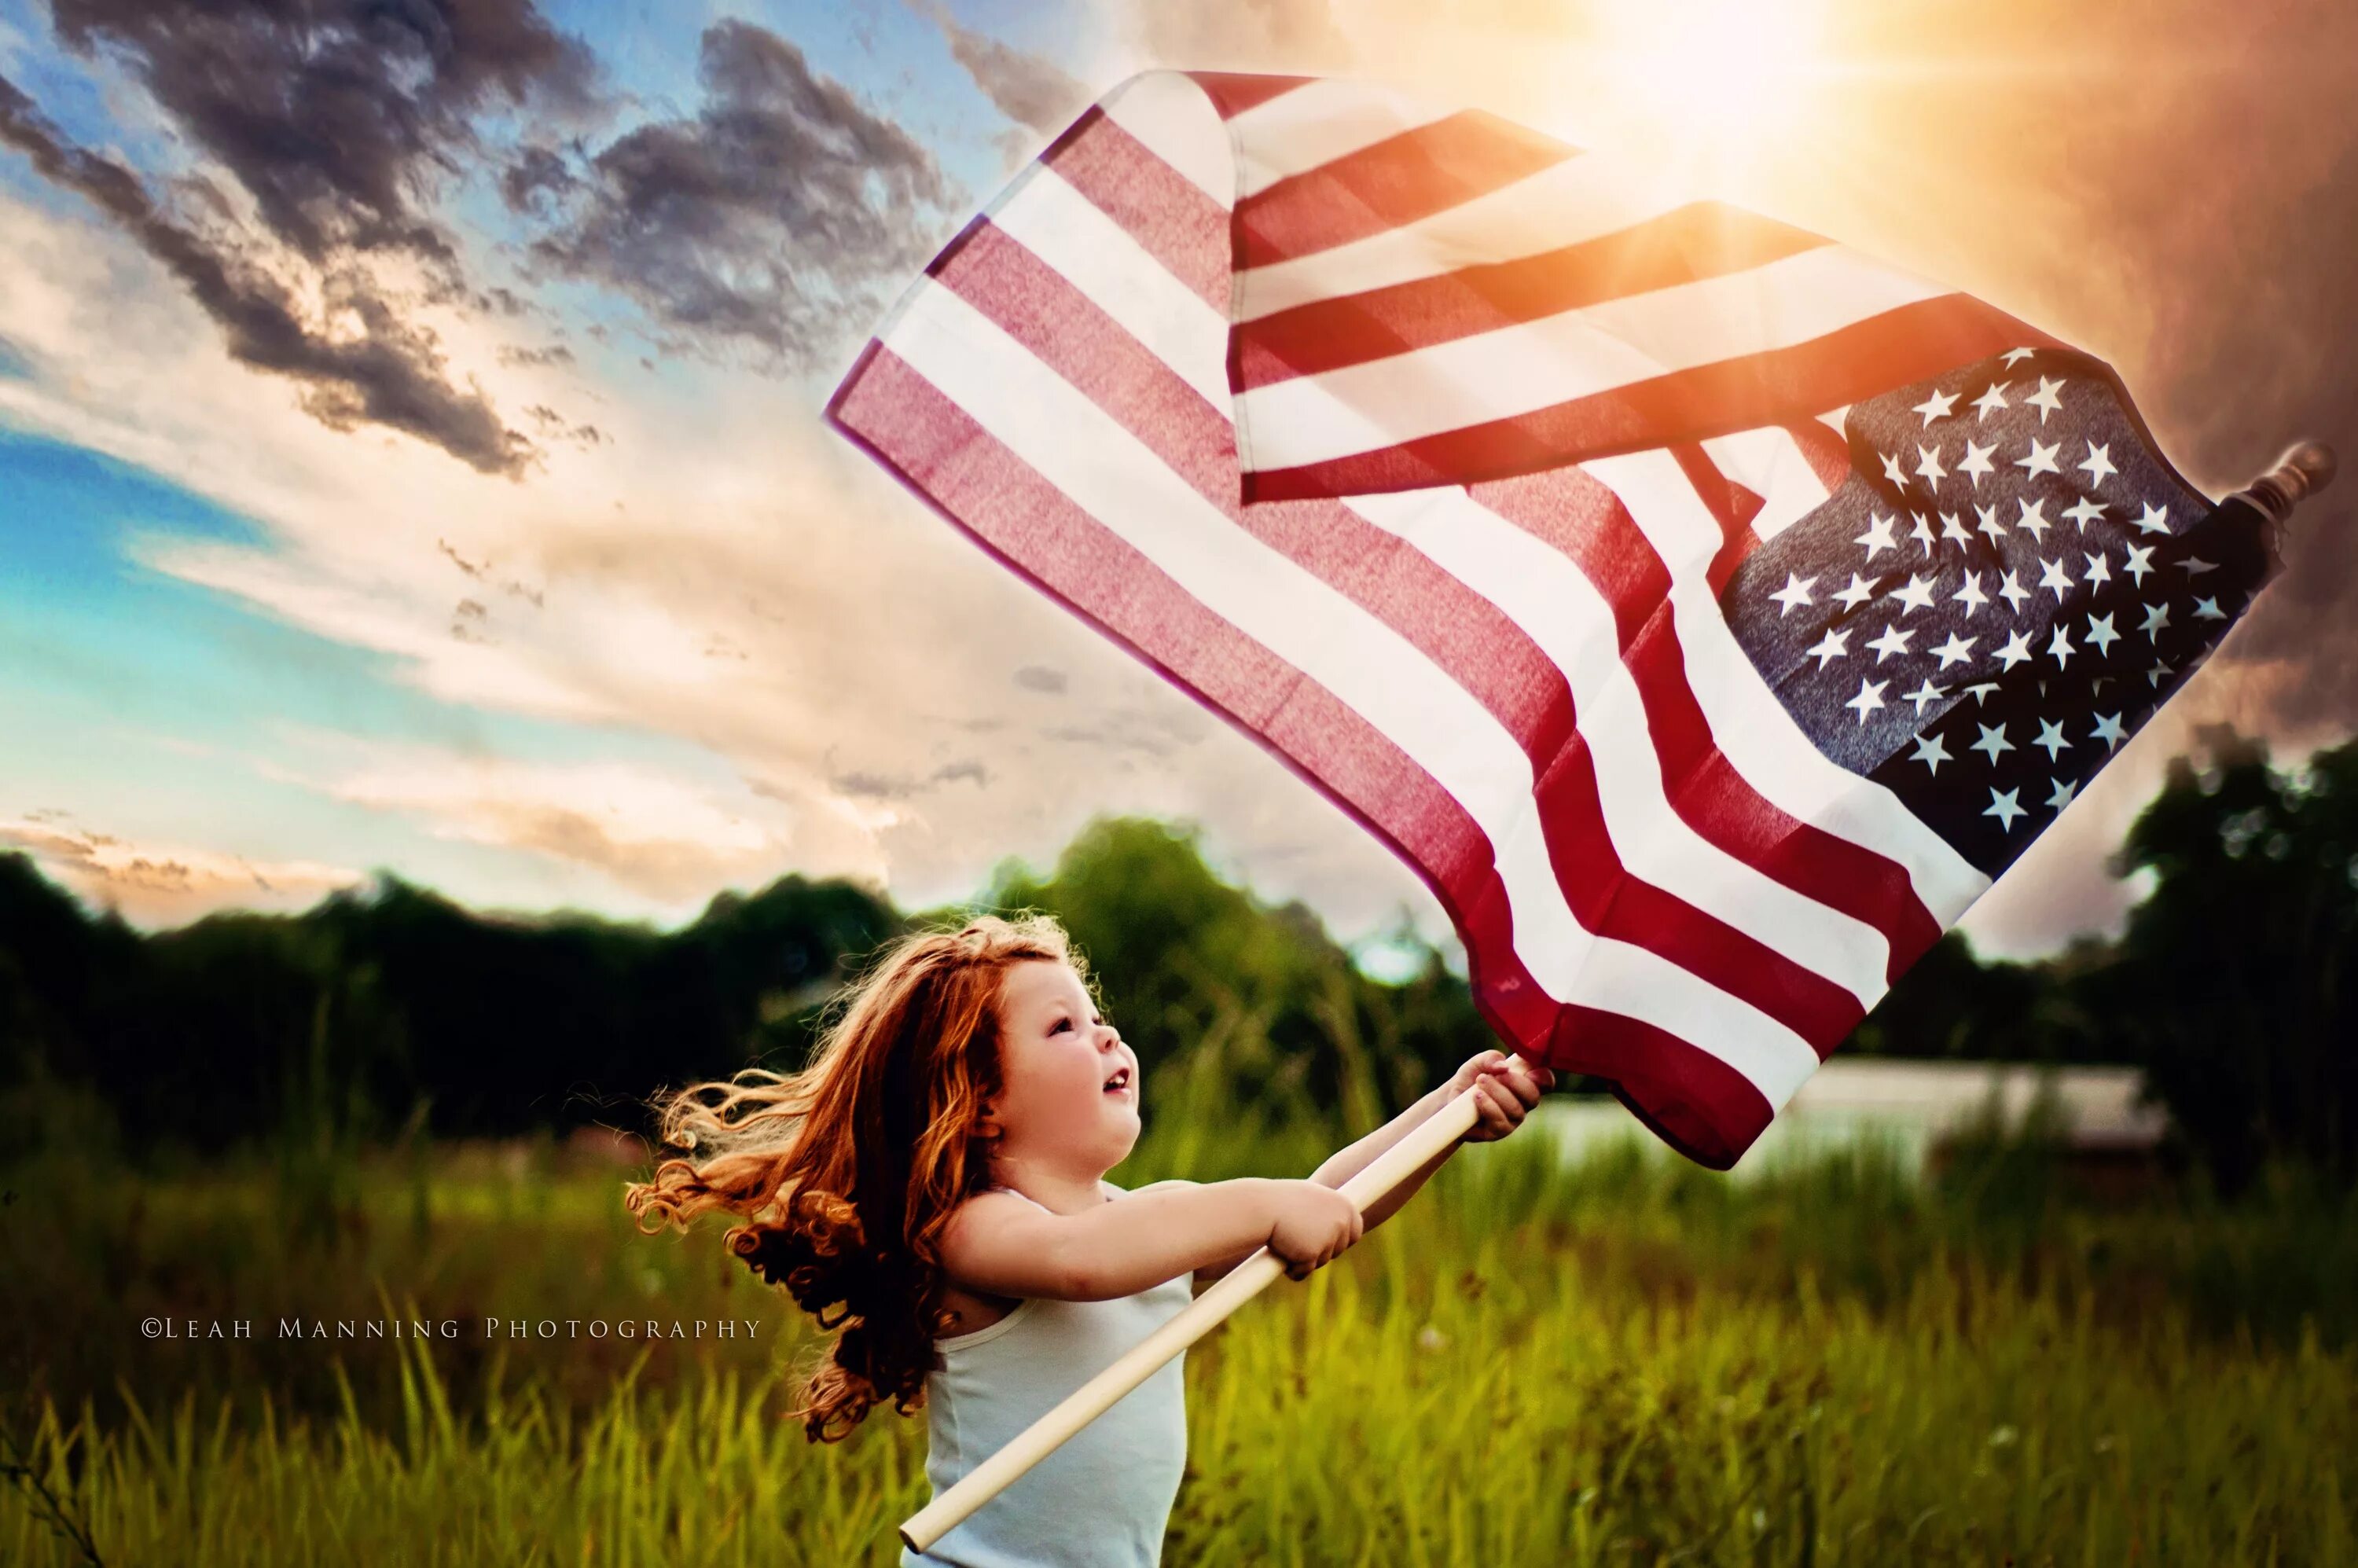 America is beautiful. Американское лето. Американский флаг. Девушка с американским флагом. Американский флаг на плече.